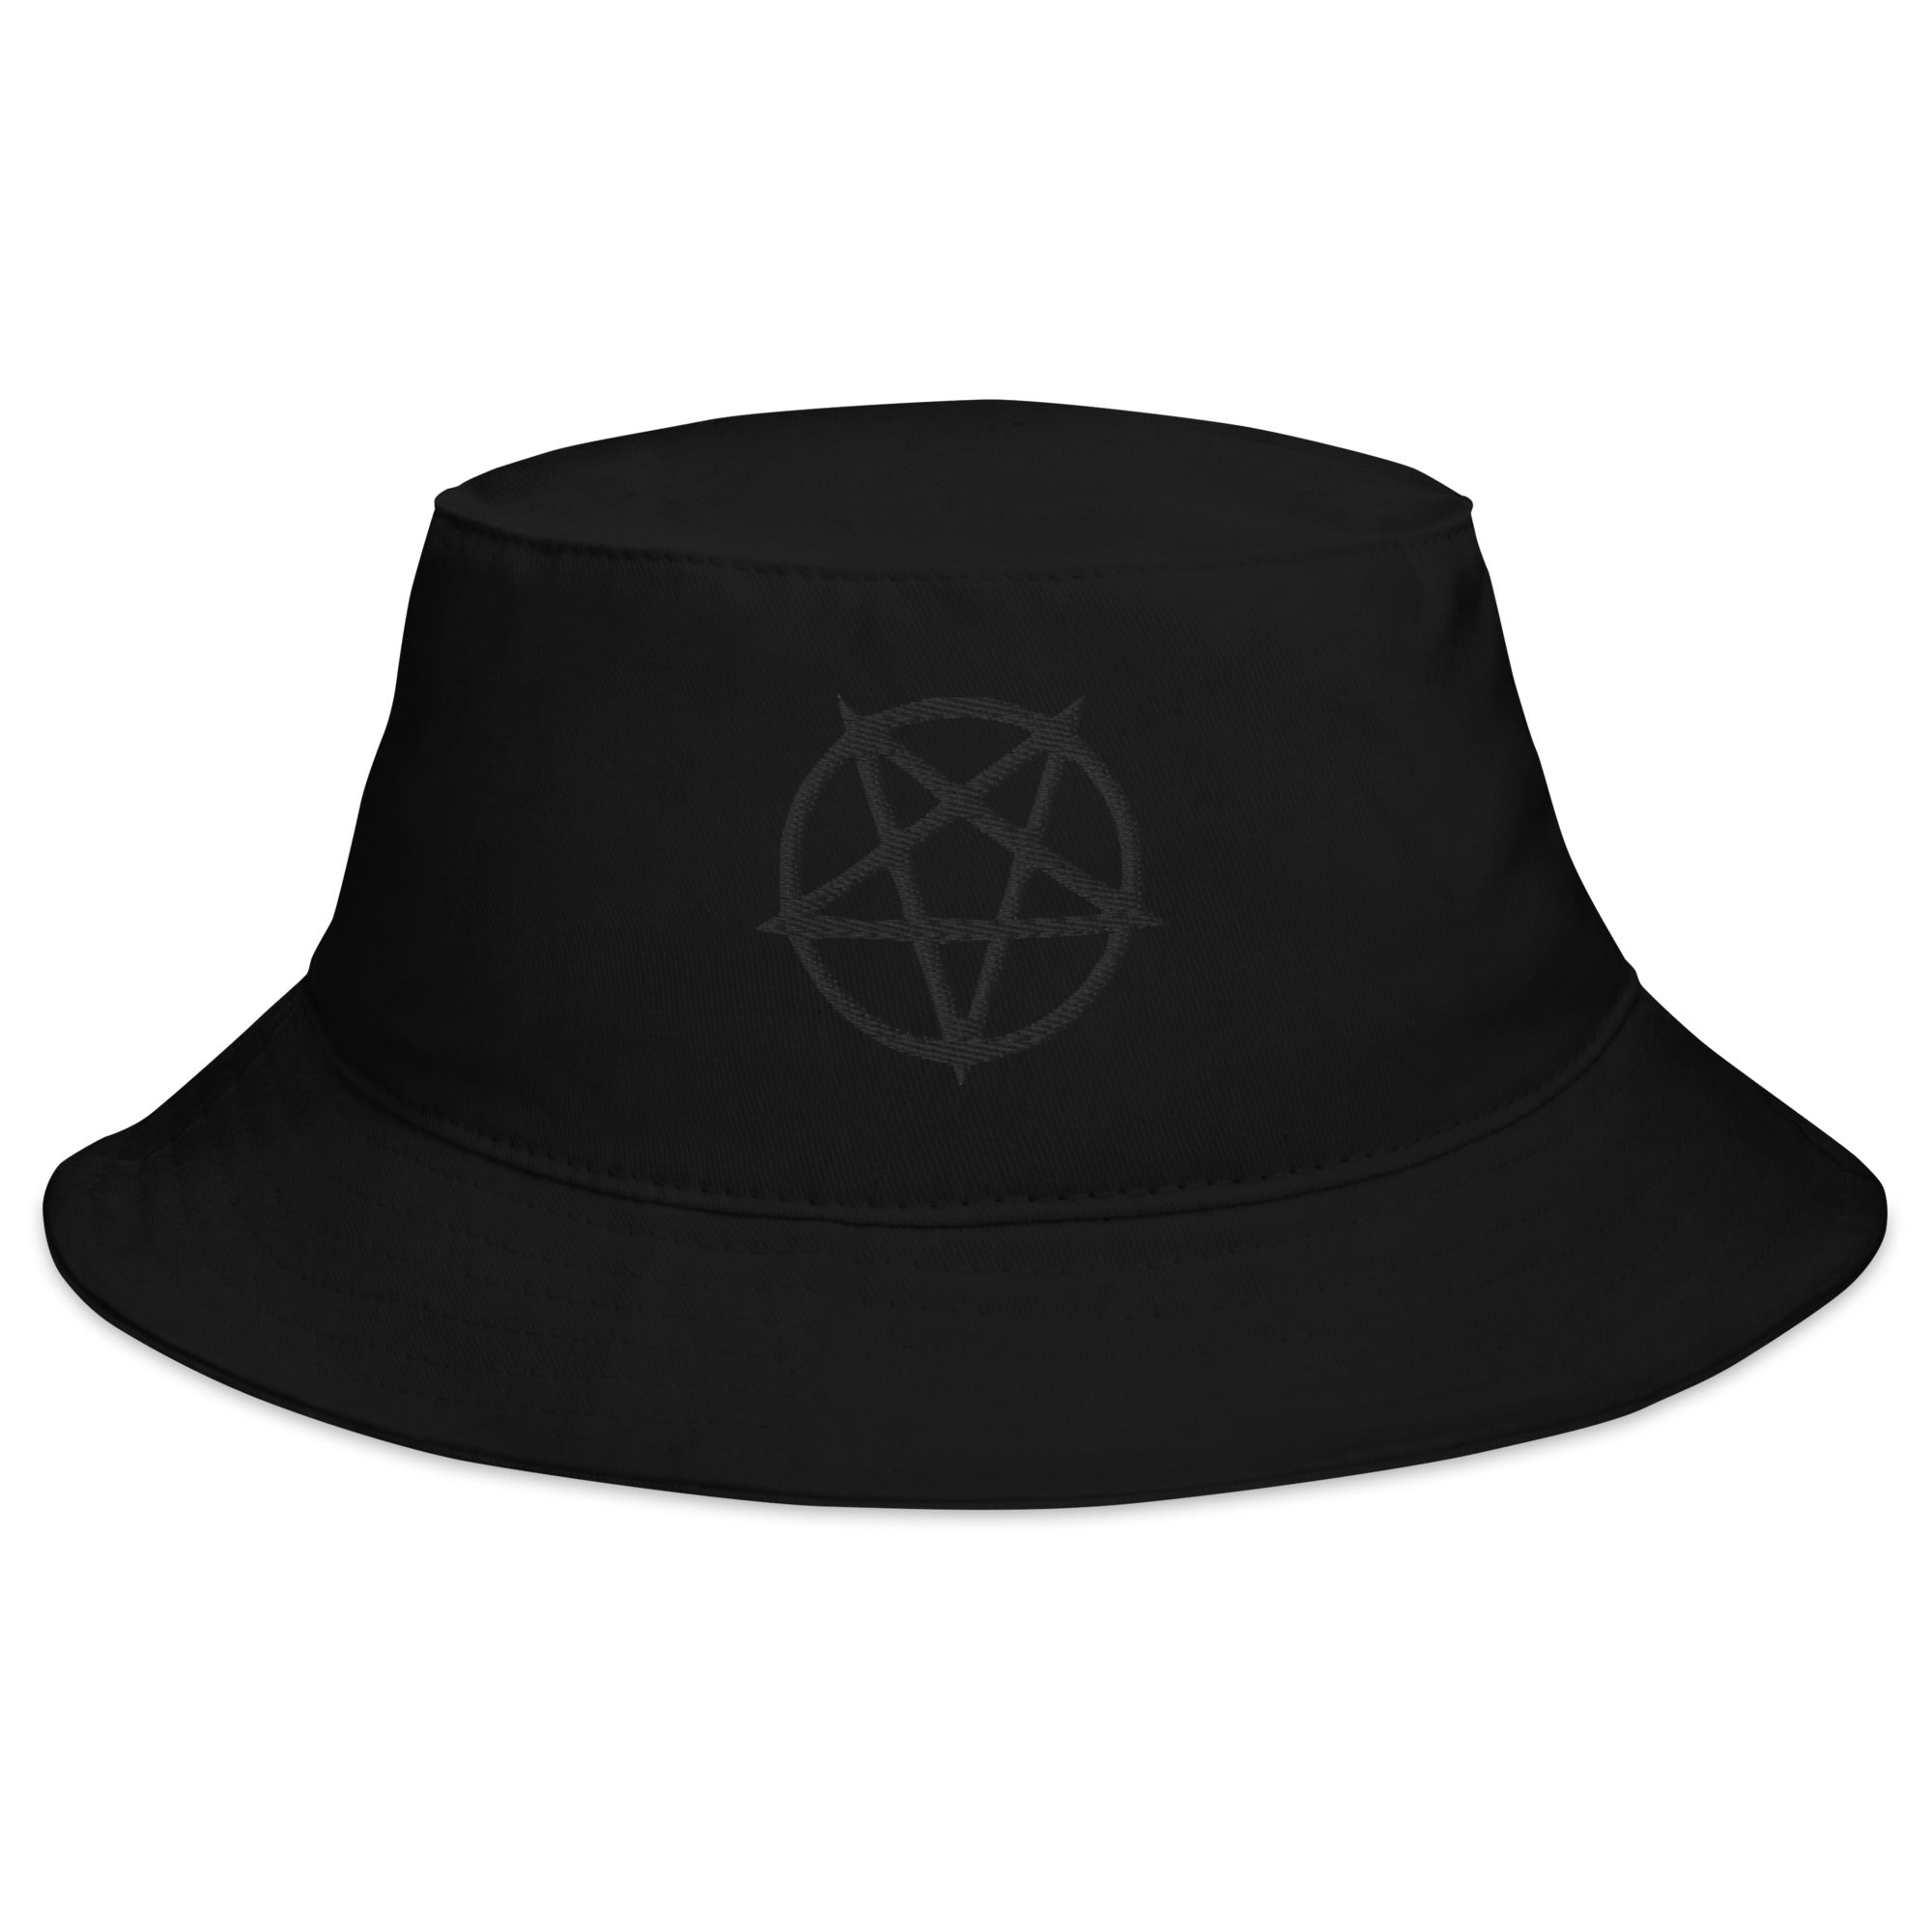 Black Inverted Pentagram Occult Symbol Embroidered Bucket Hat